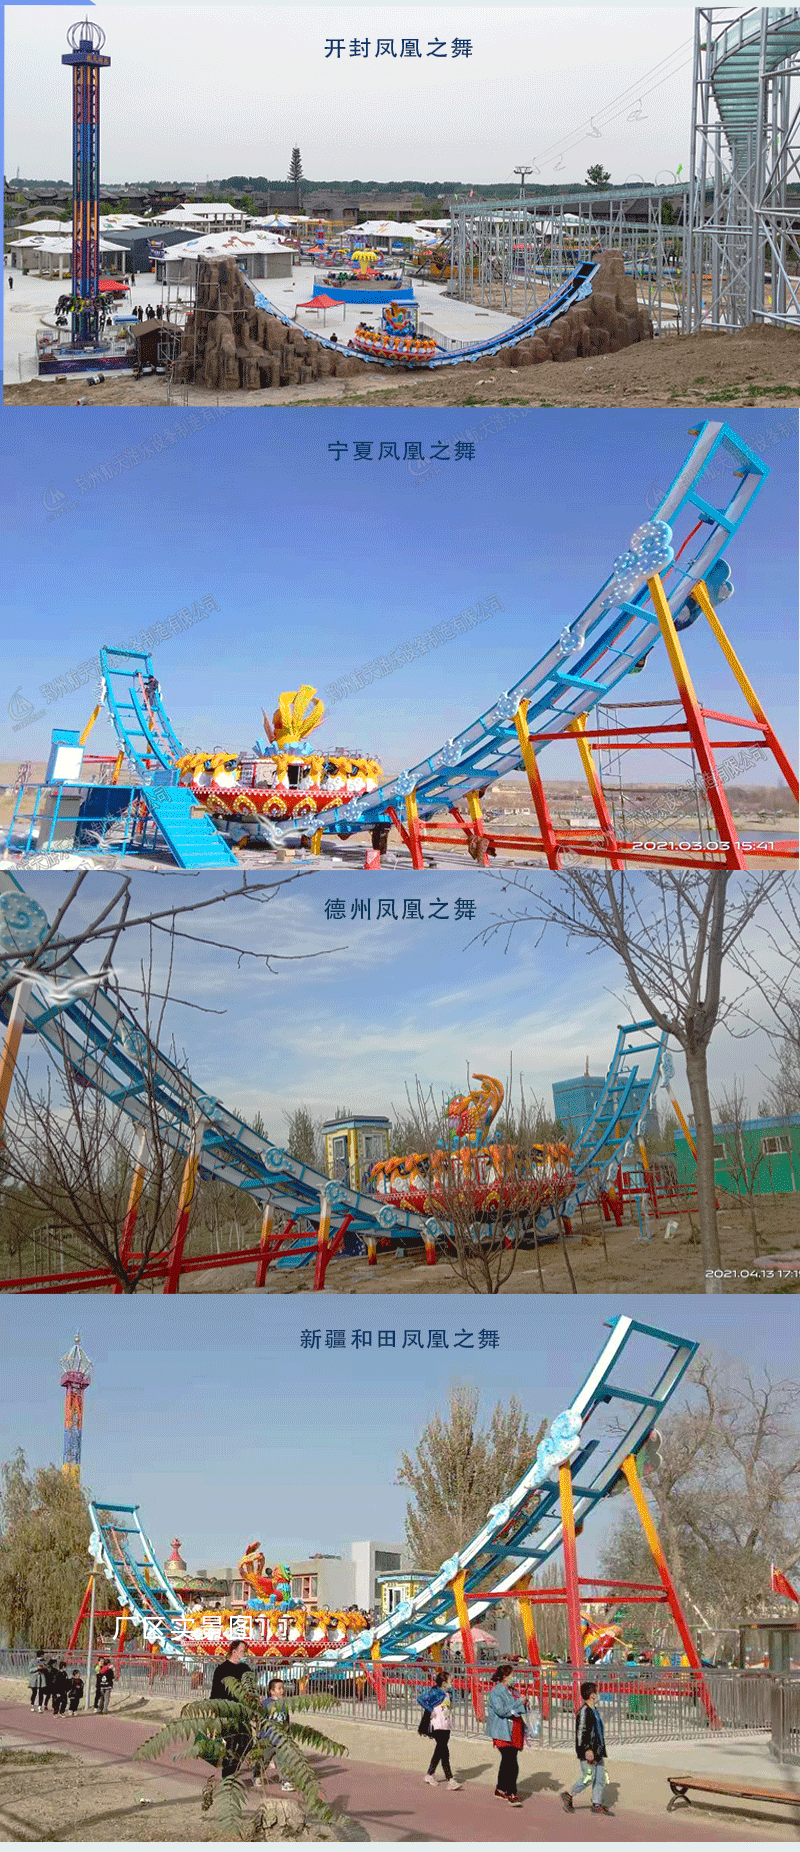 郑州大型大型轨道飞碟游乐场设施航天游乐价格 4